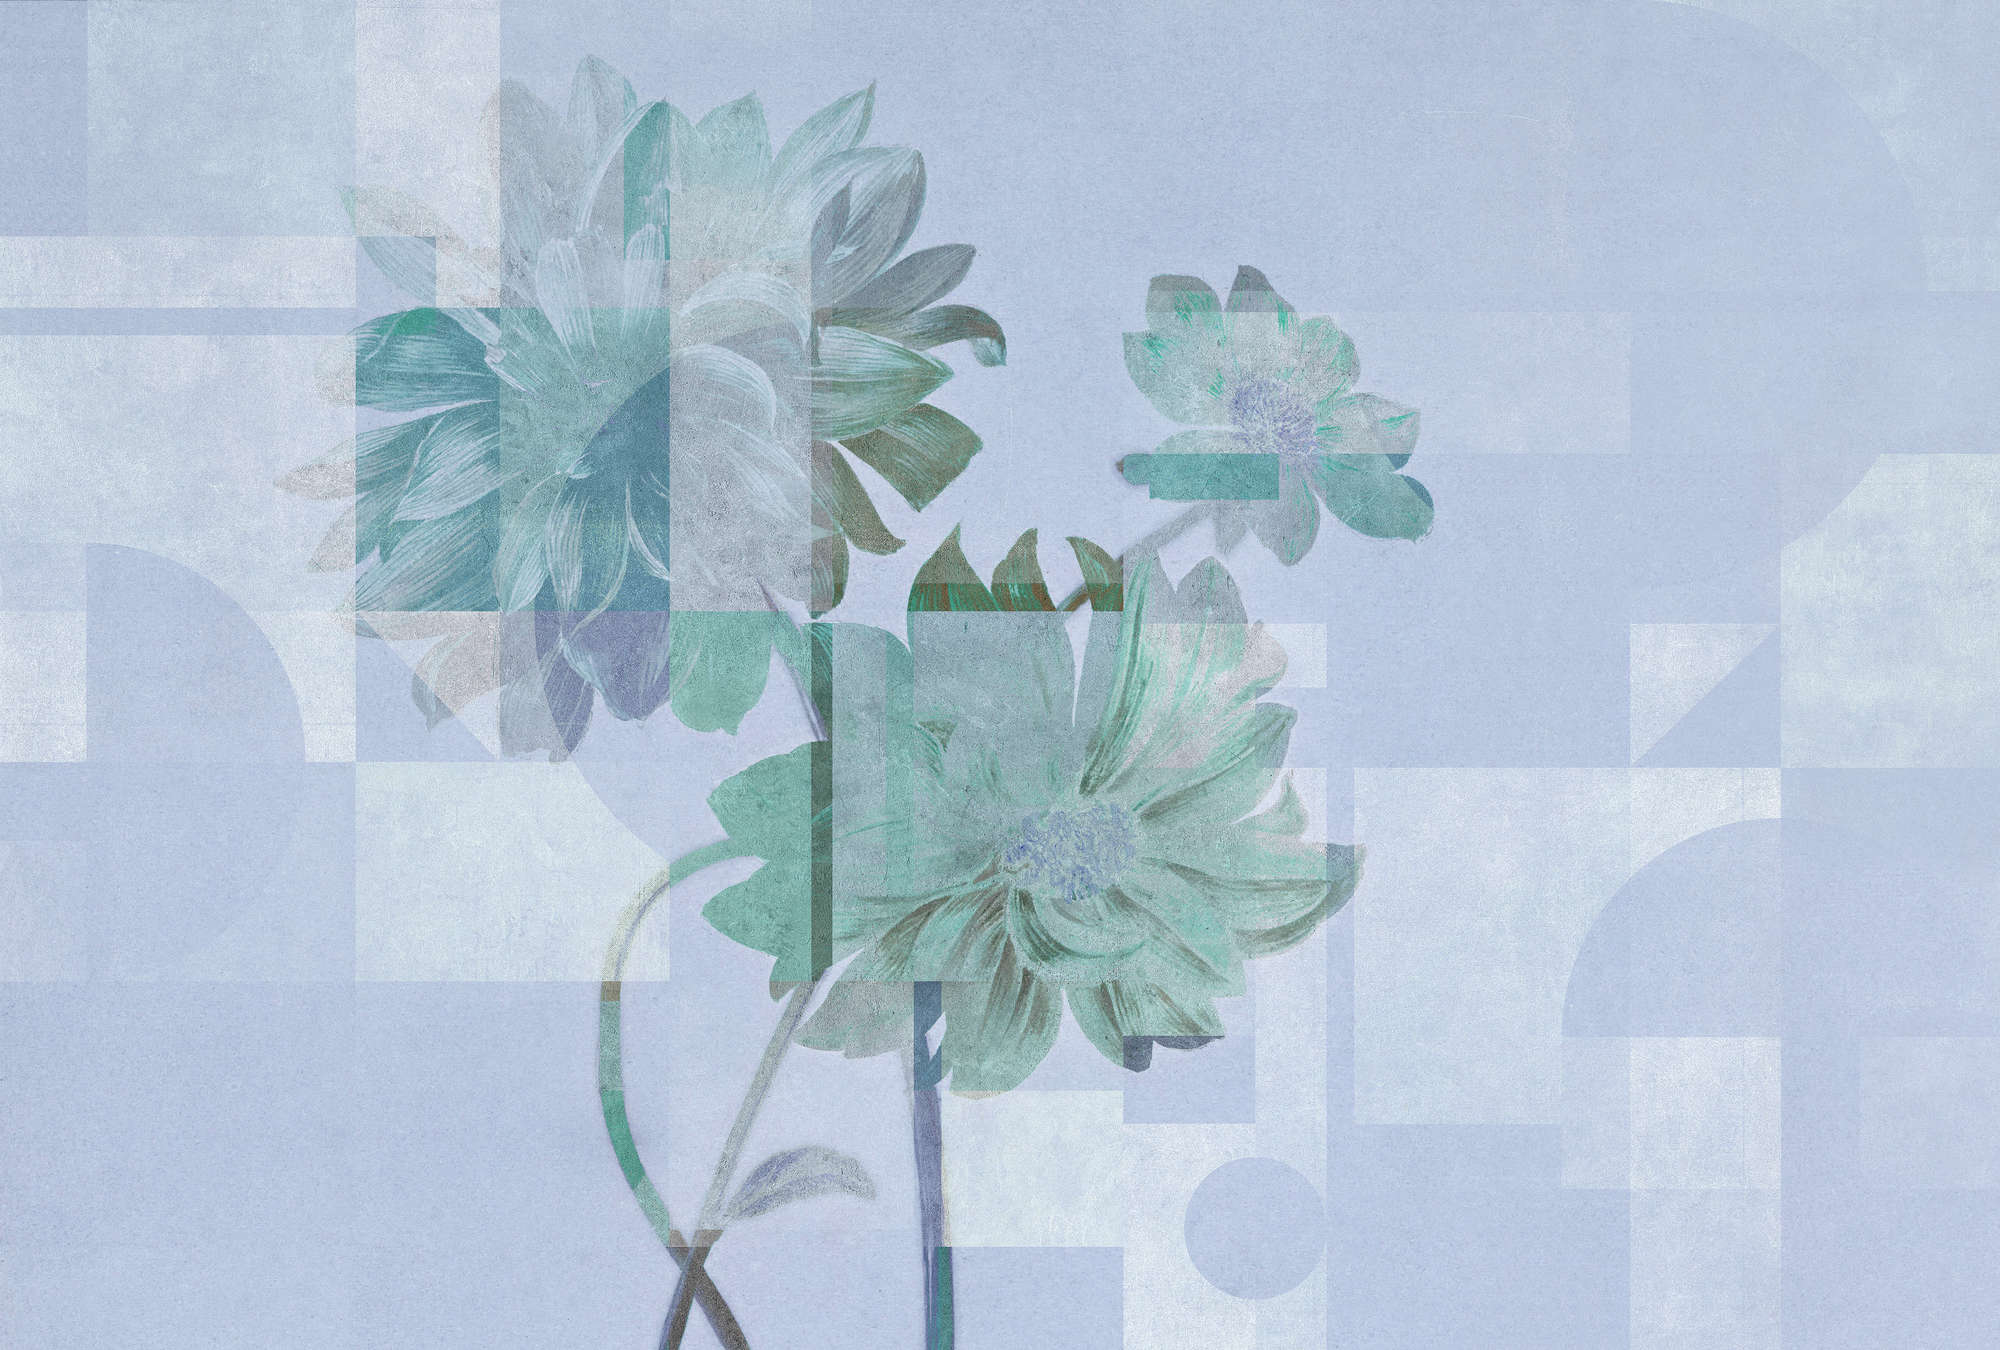             Queens Garden 1 – Blumen Fototapete blaue Margariten & Grafik Muster
        